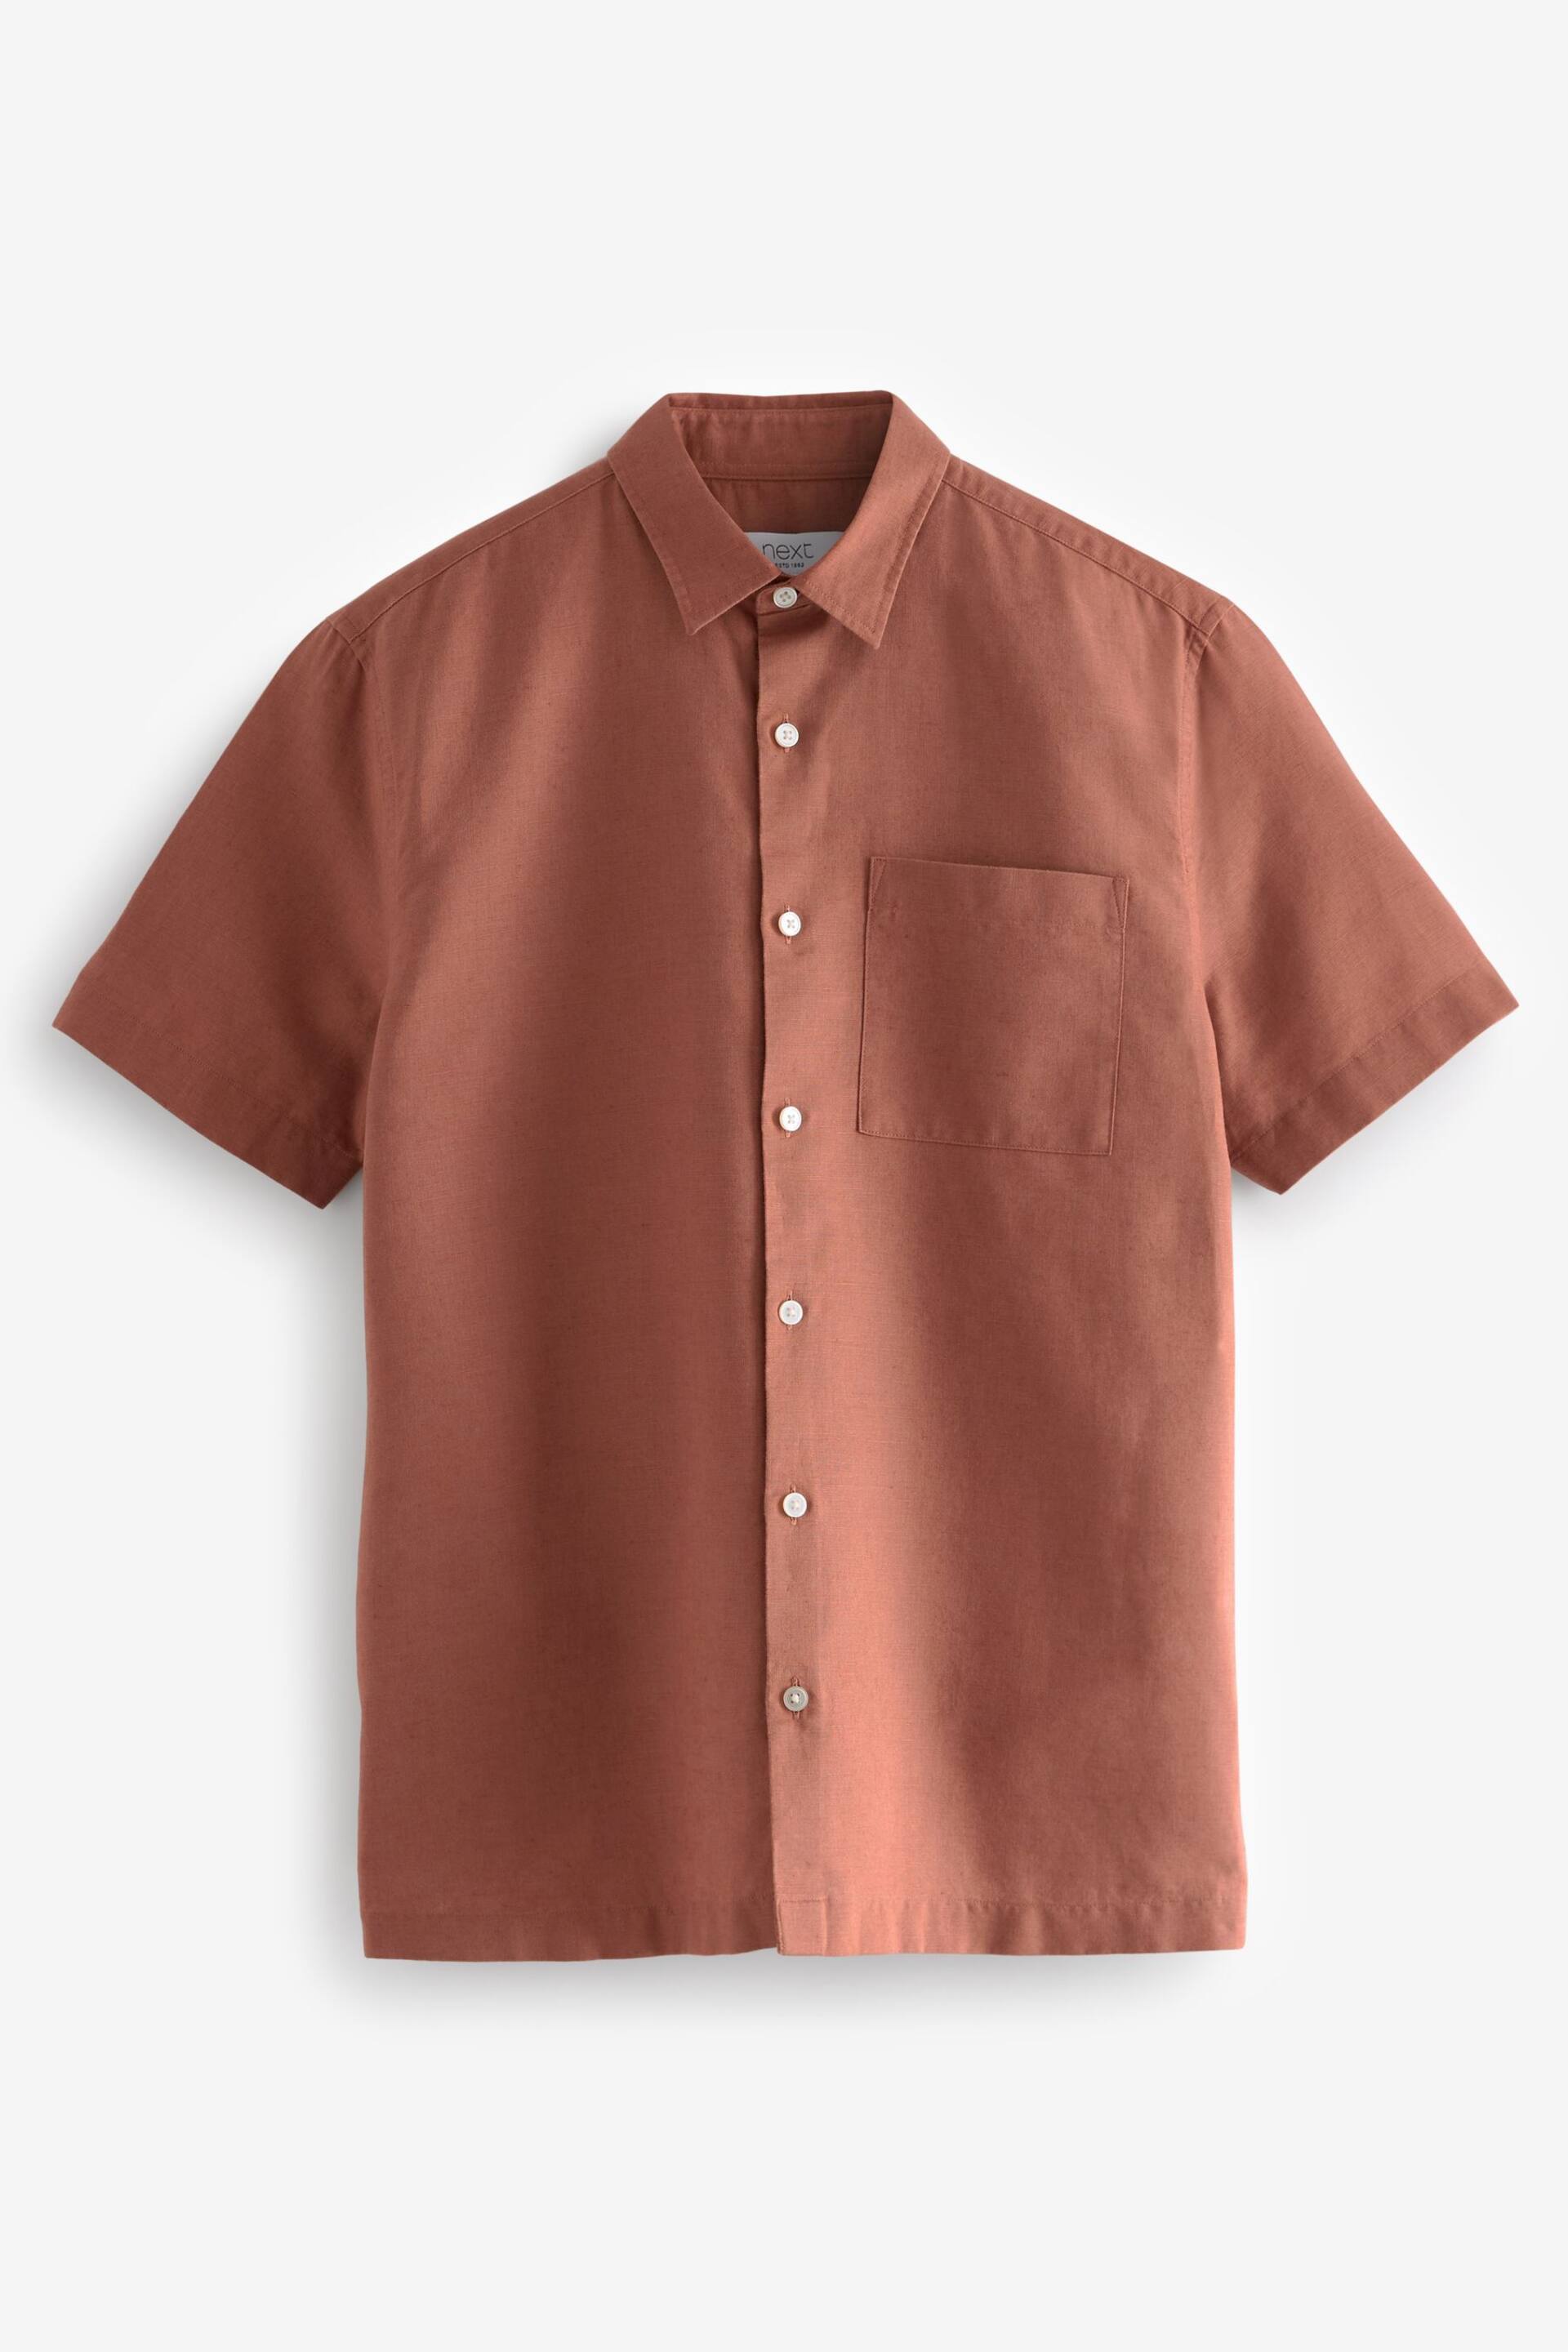 Brown Standard Collar Linen Blend Short Sleeve Shirt - Image 6 of 8